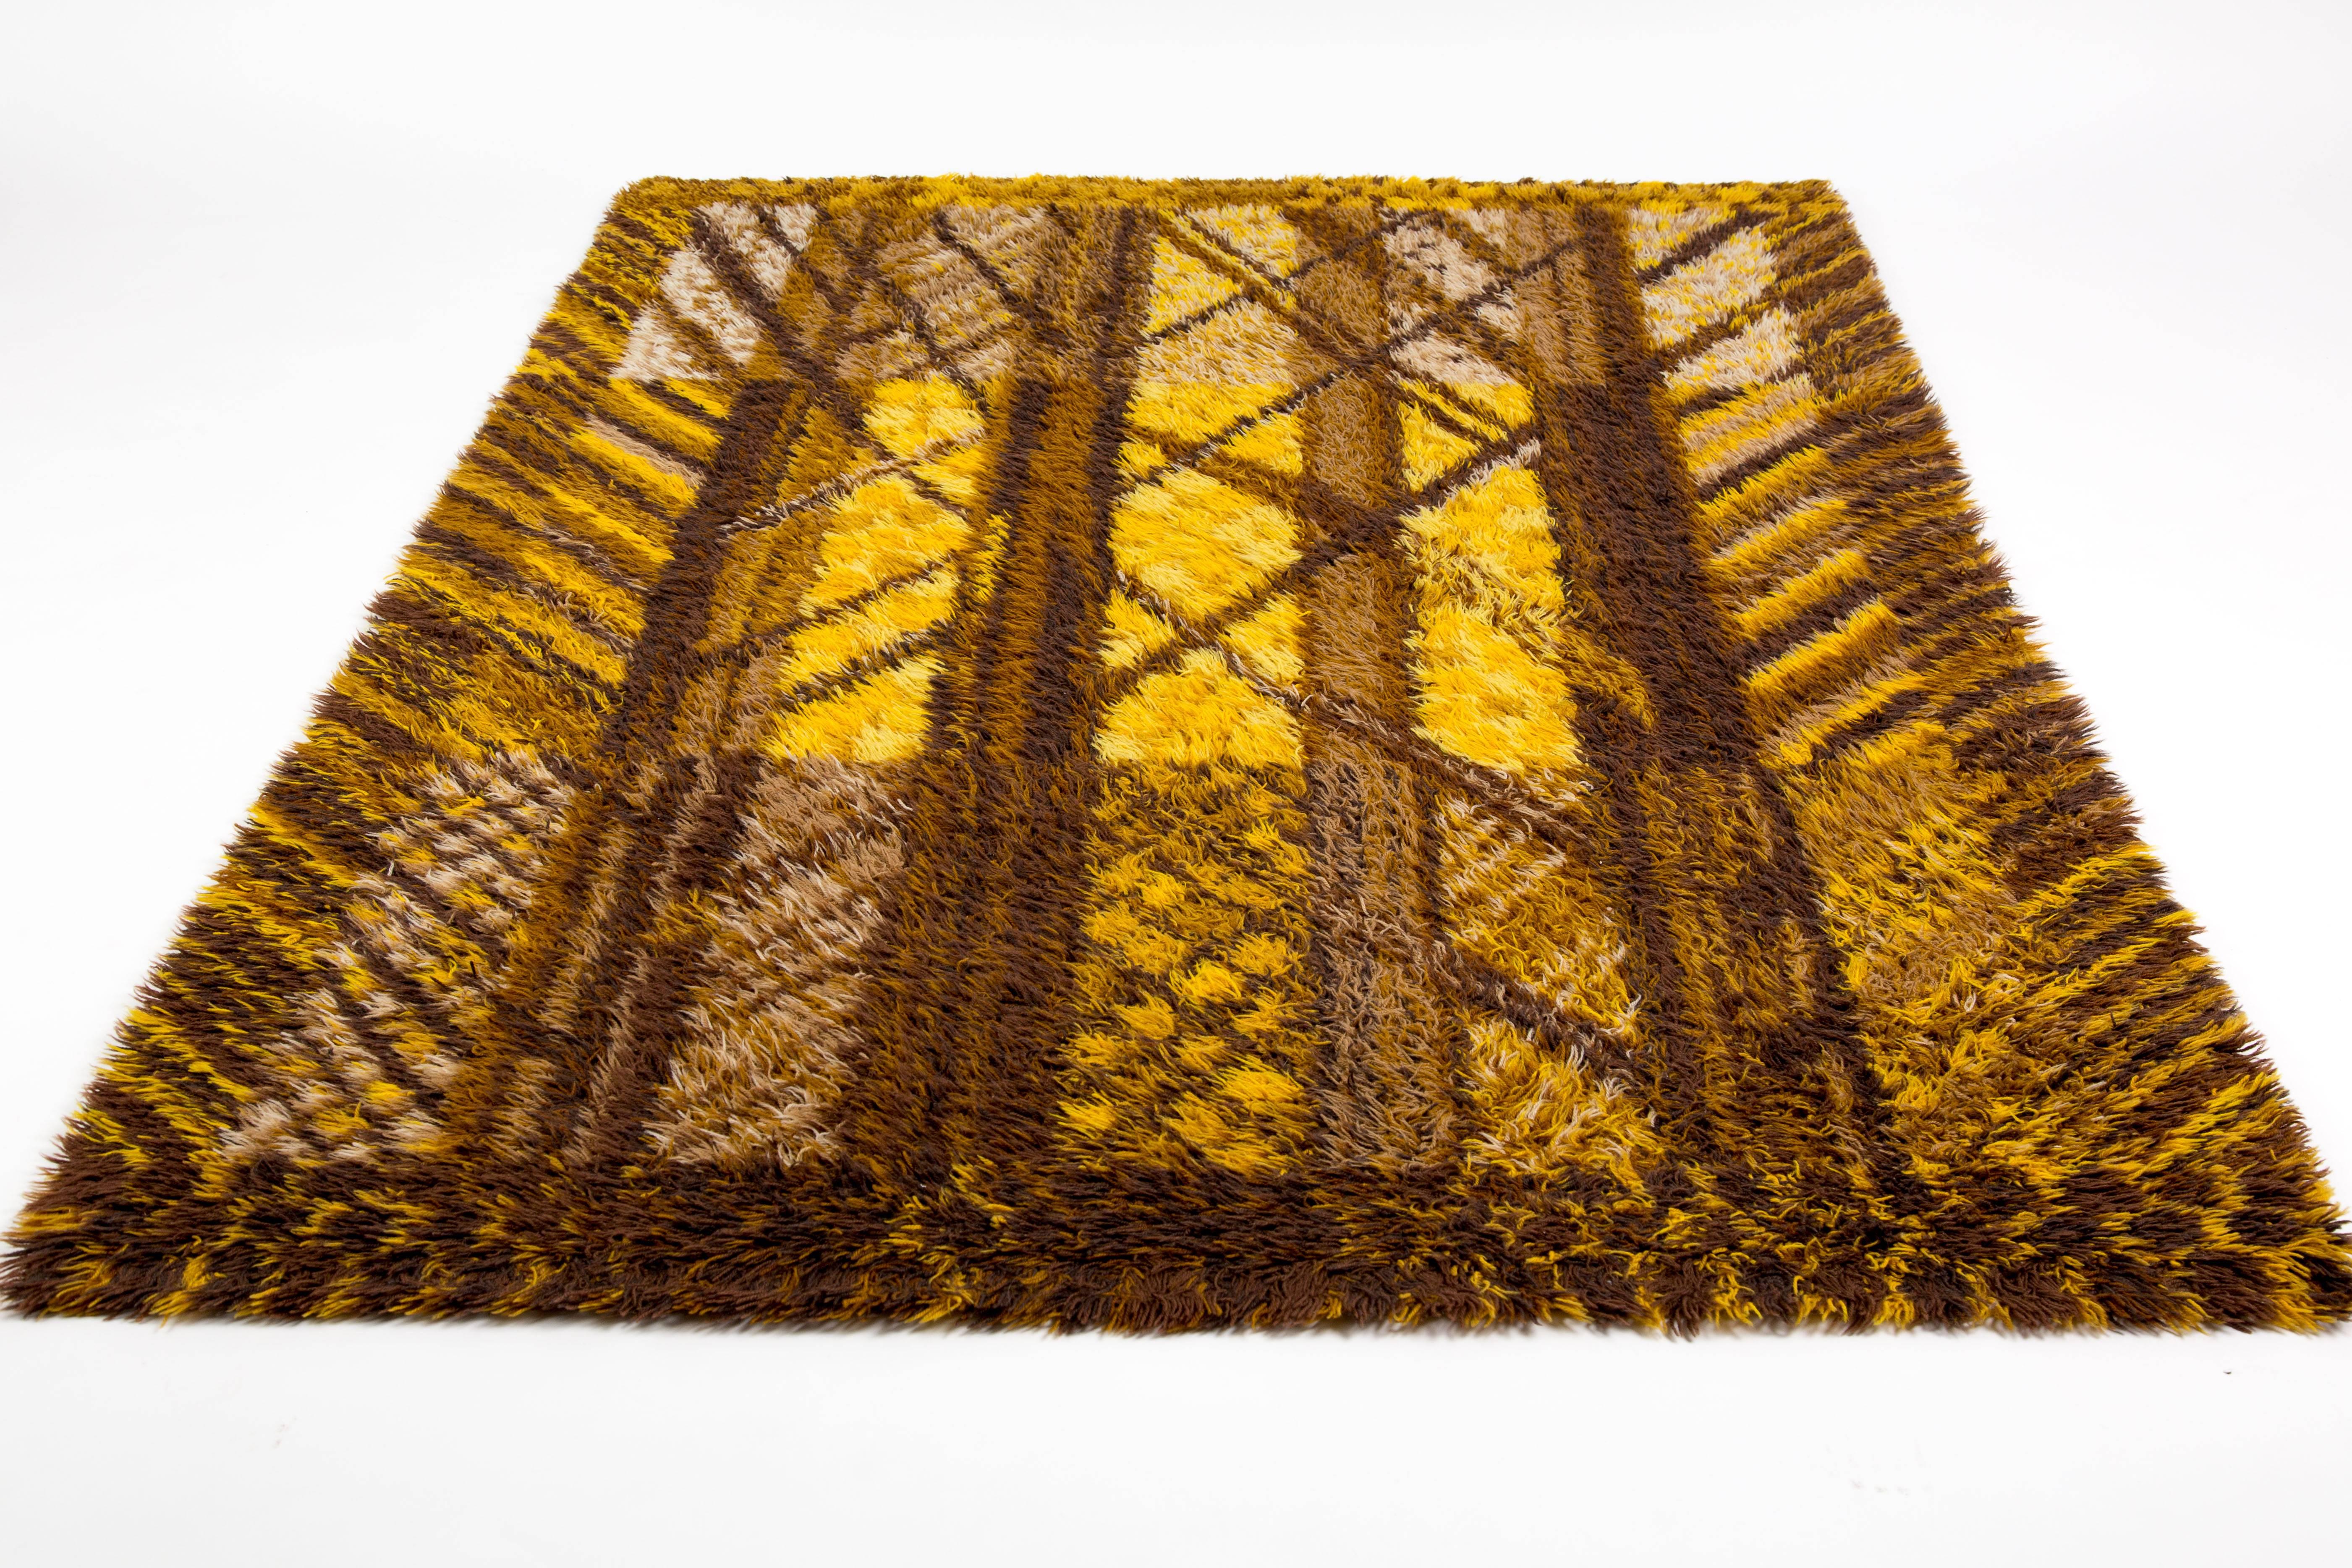 Woven Marianne Richter Carpet Forest Of Wool Scandinavian